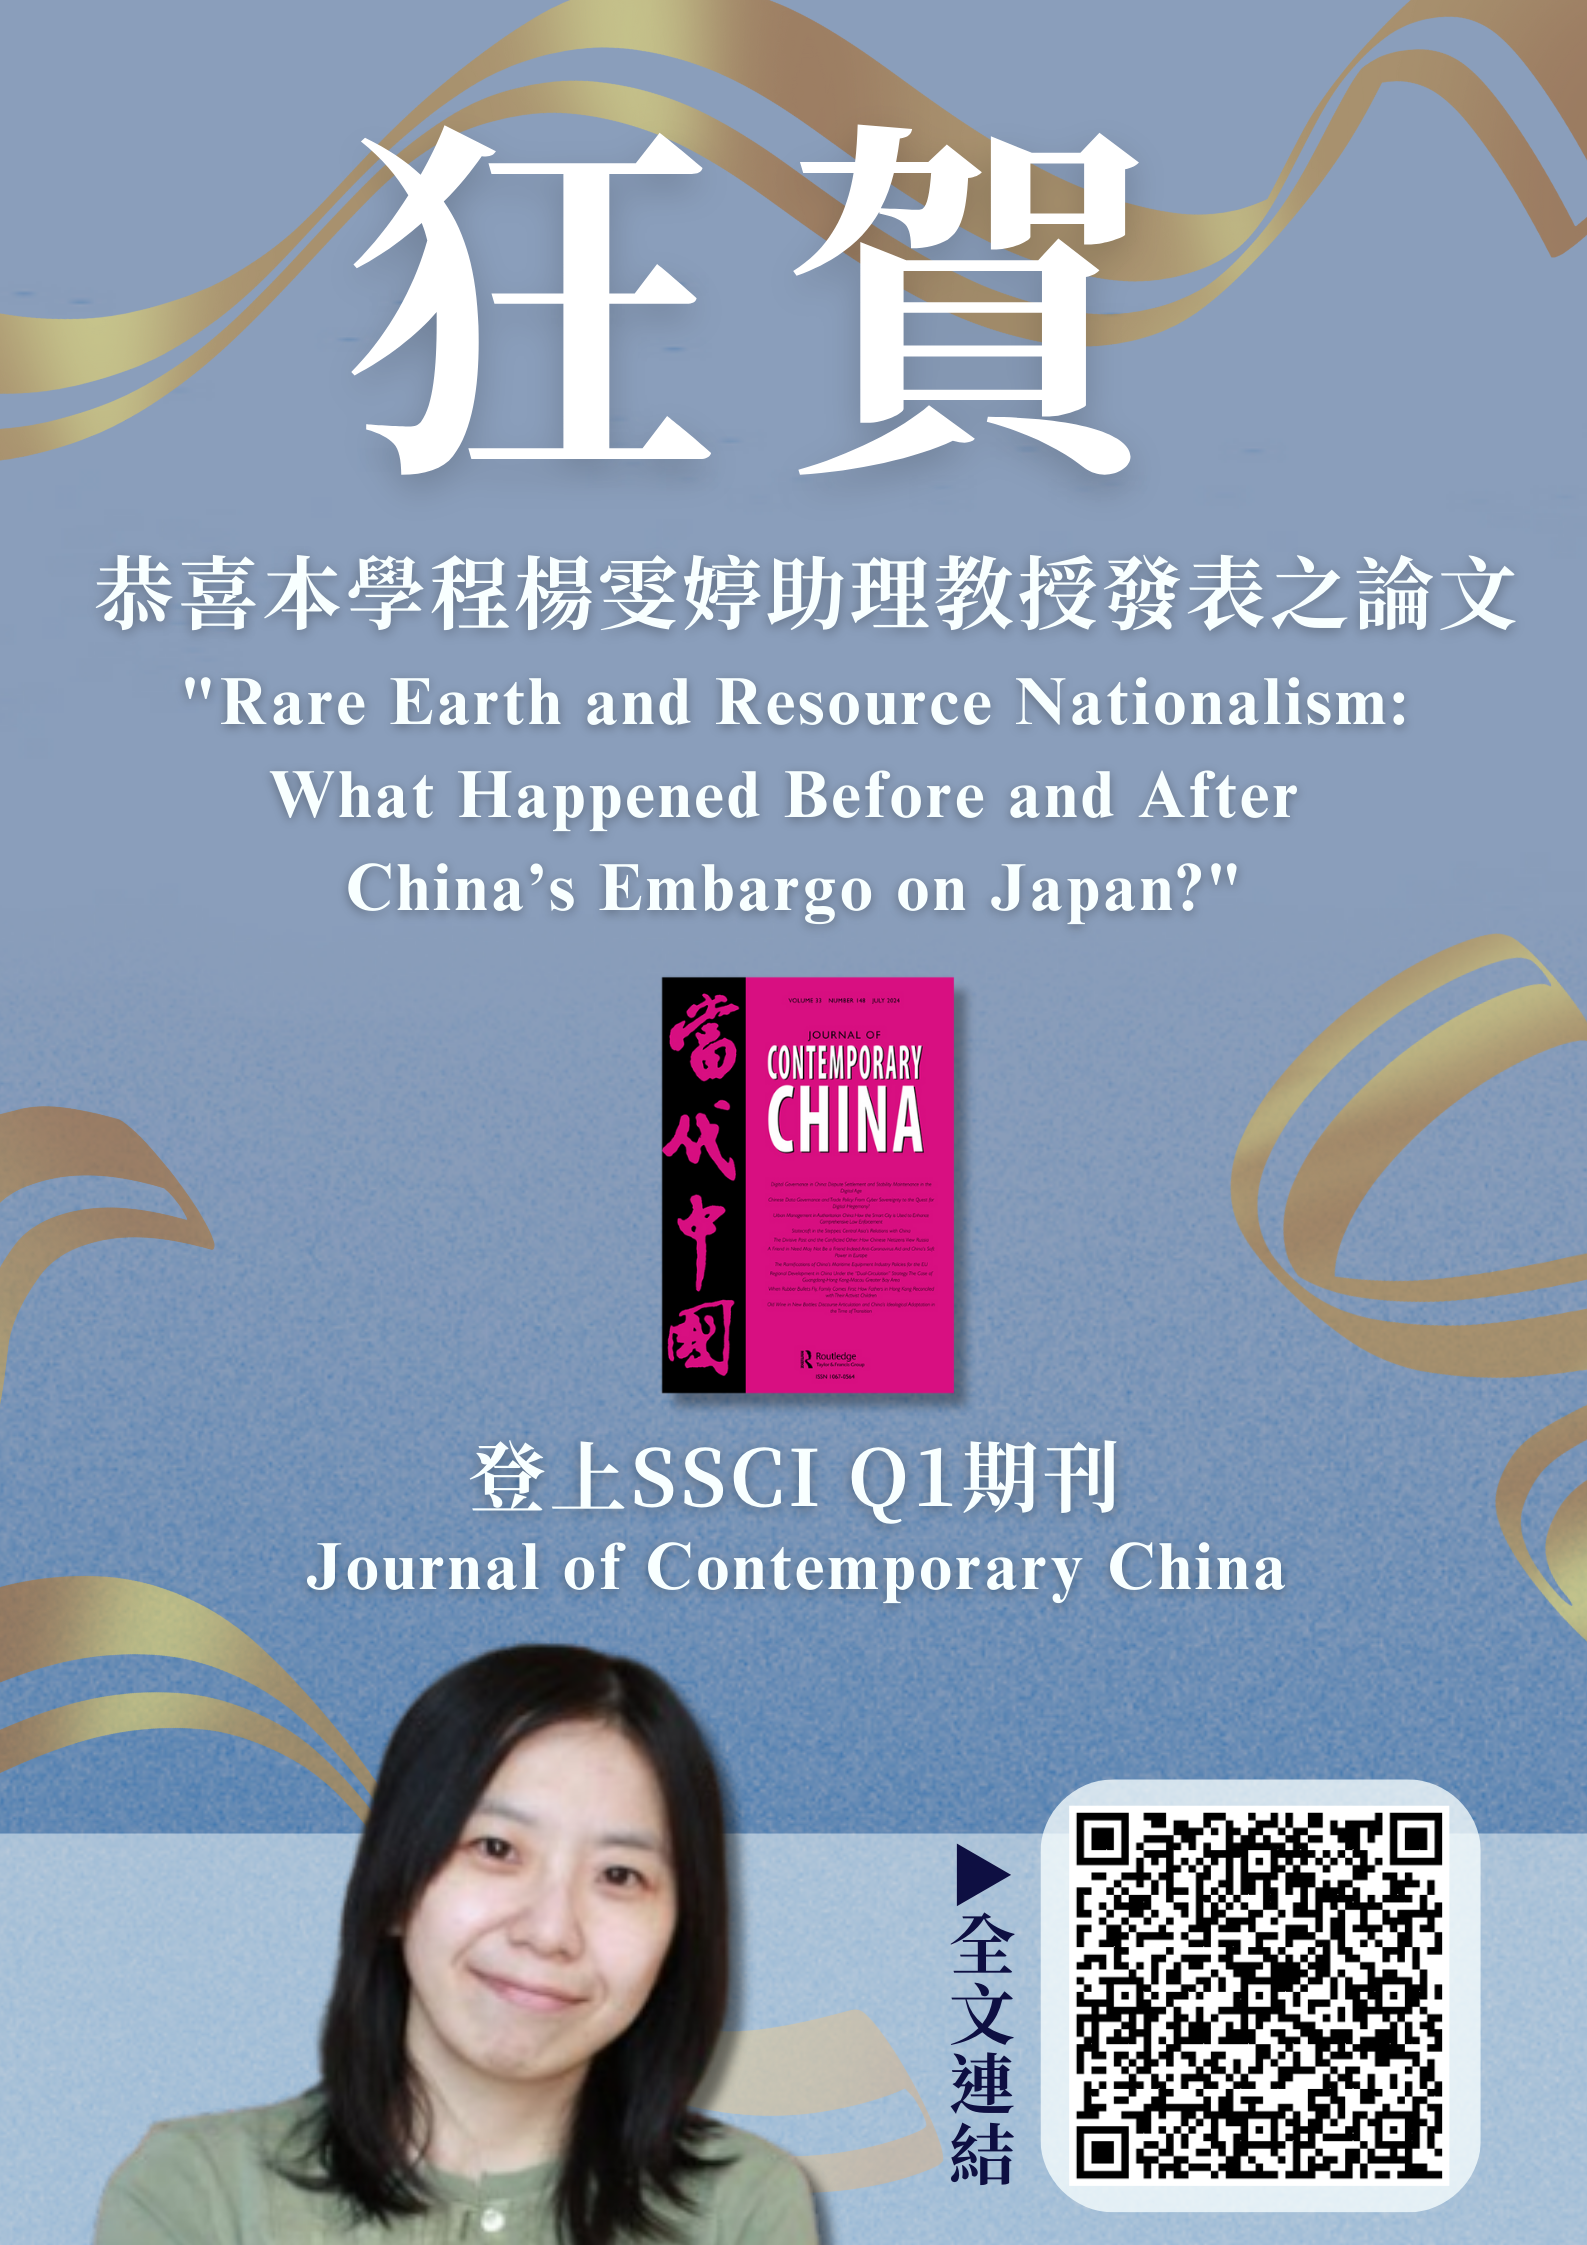 恭喜本學程楊雯婷老師發表之研究登上SSCI Q1級期刊Journal of Contemporary China 